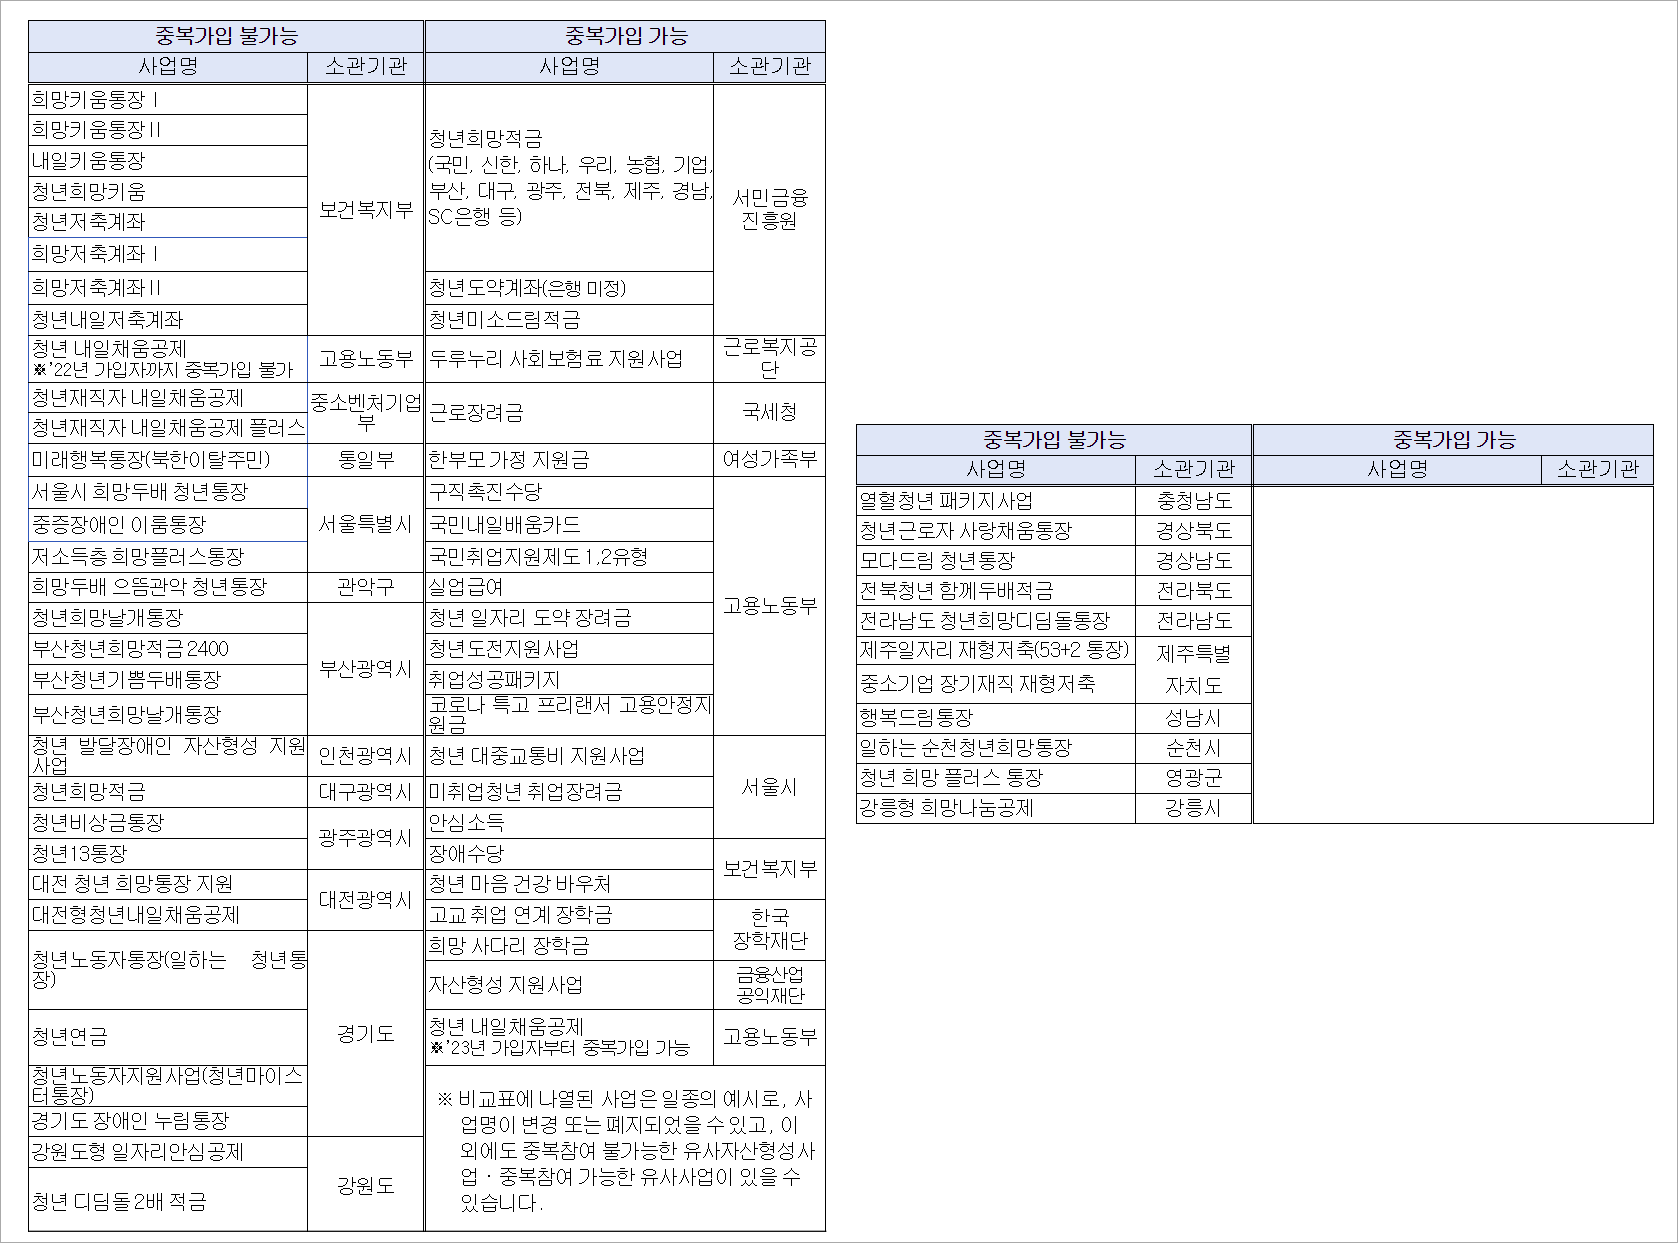 서울시 희망두배 청년통장과 중복가입 불가능한 지원 사업과 중복가입 가능한 지원 사업 목록